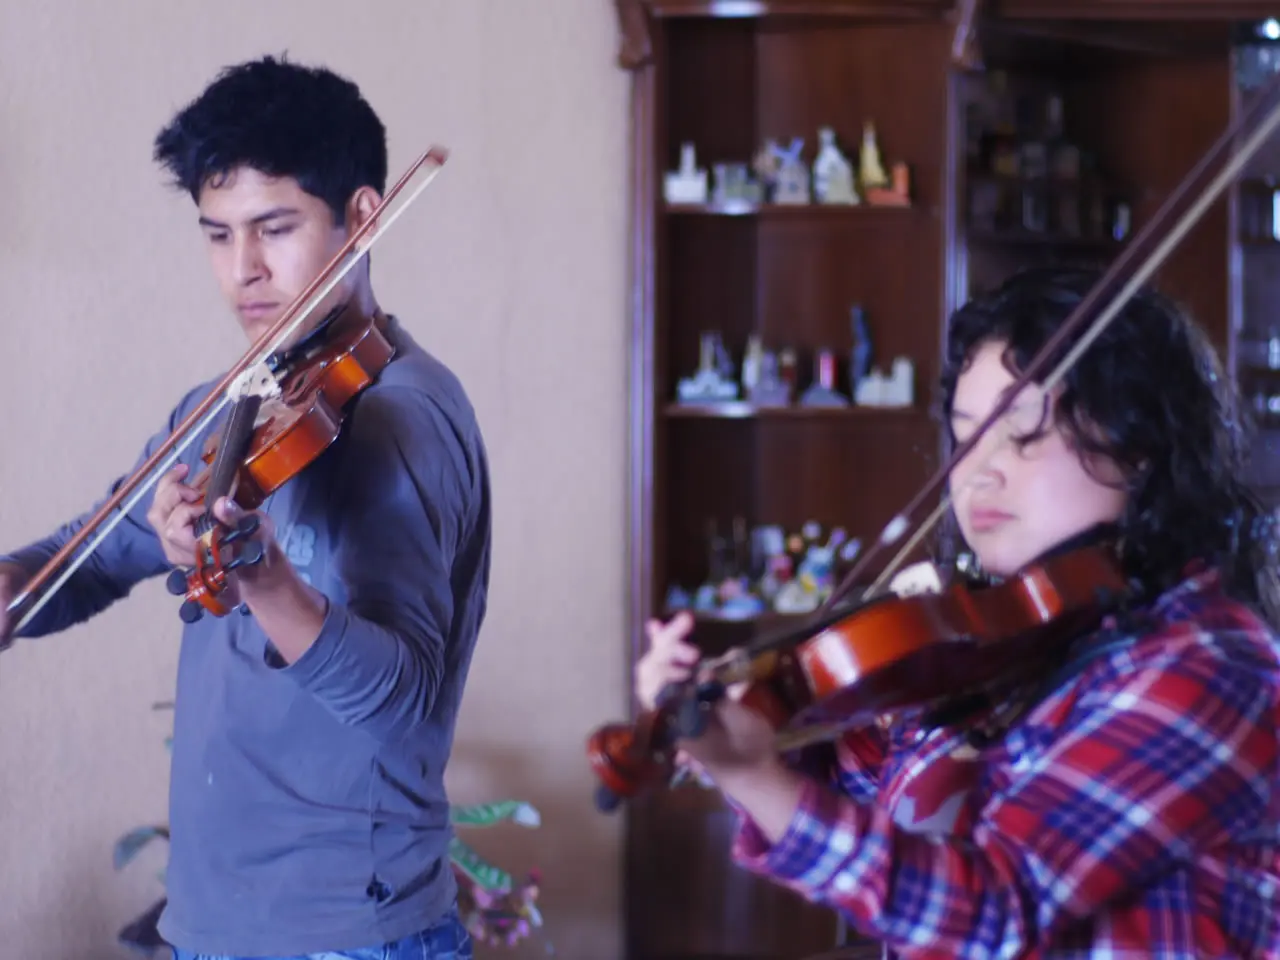 clases de violin udea - Qué tan buena es la Universidad UdeA